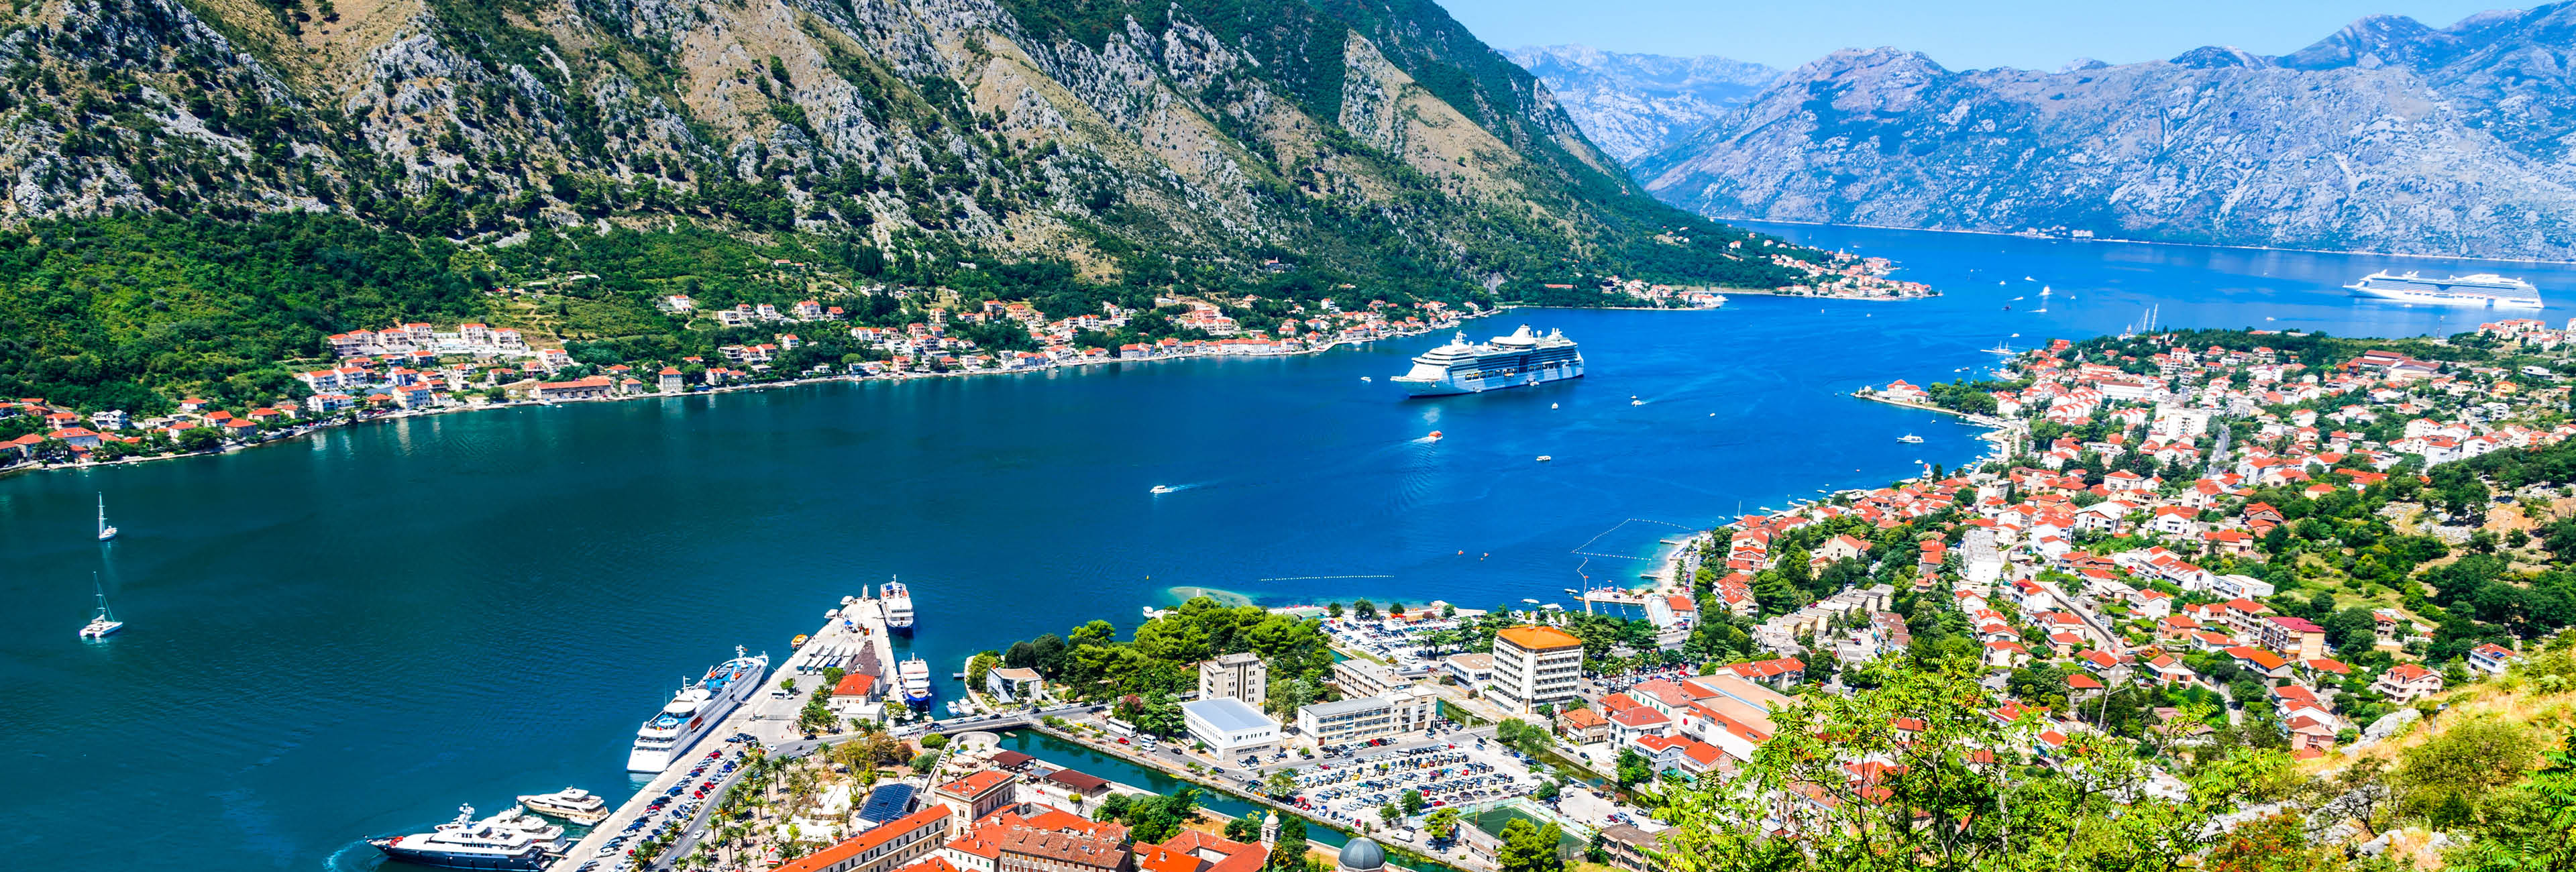 mediterranean-cruise-deals3.jpg